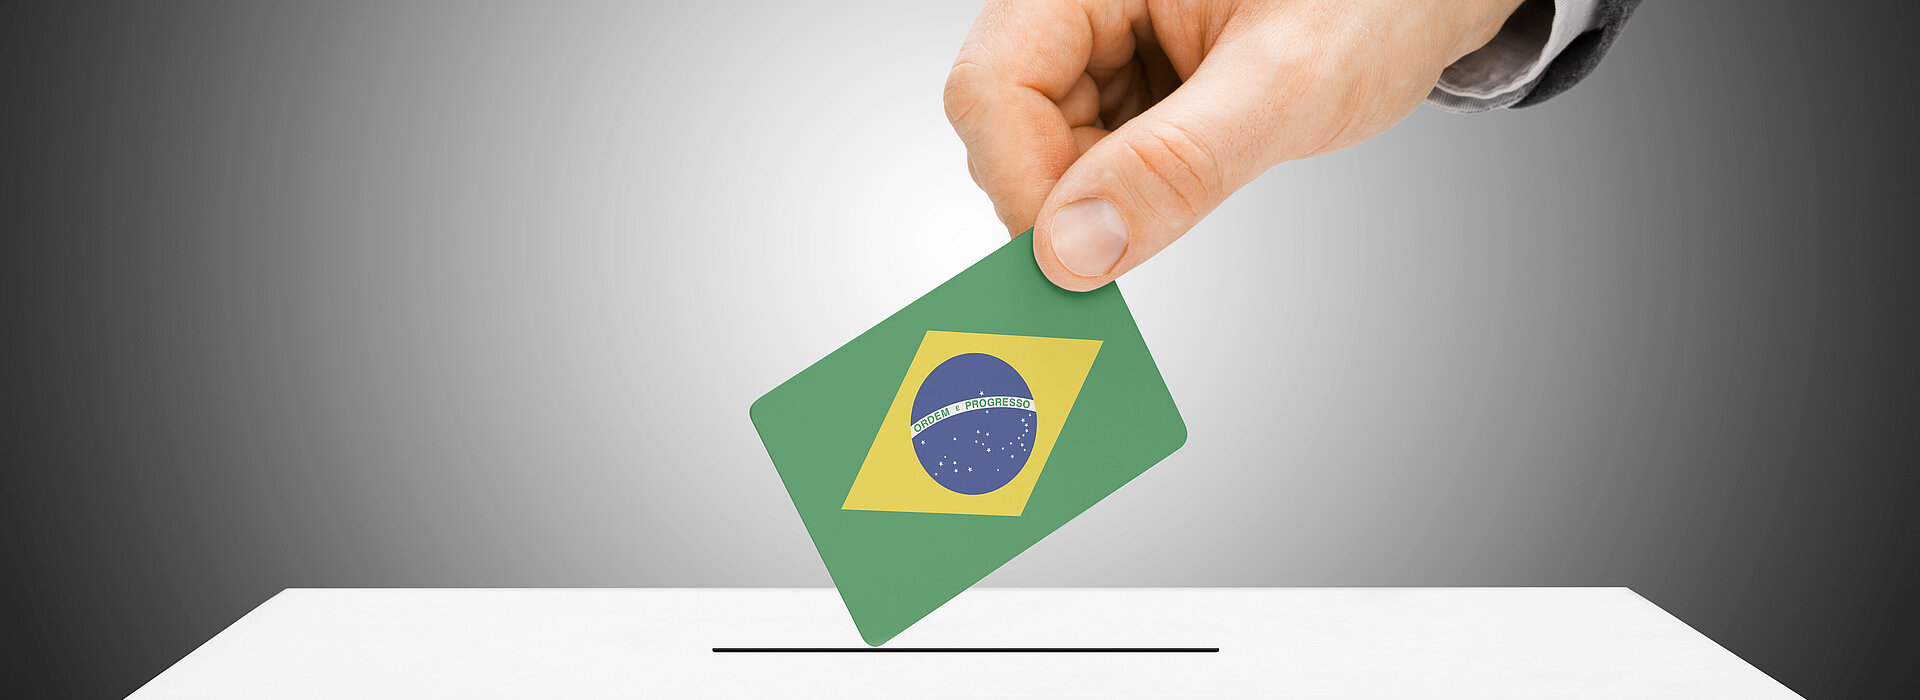 mão coloca voto com bandeira do Brasil em urna